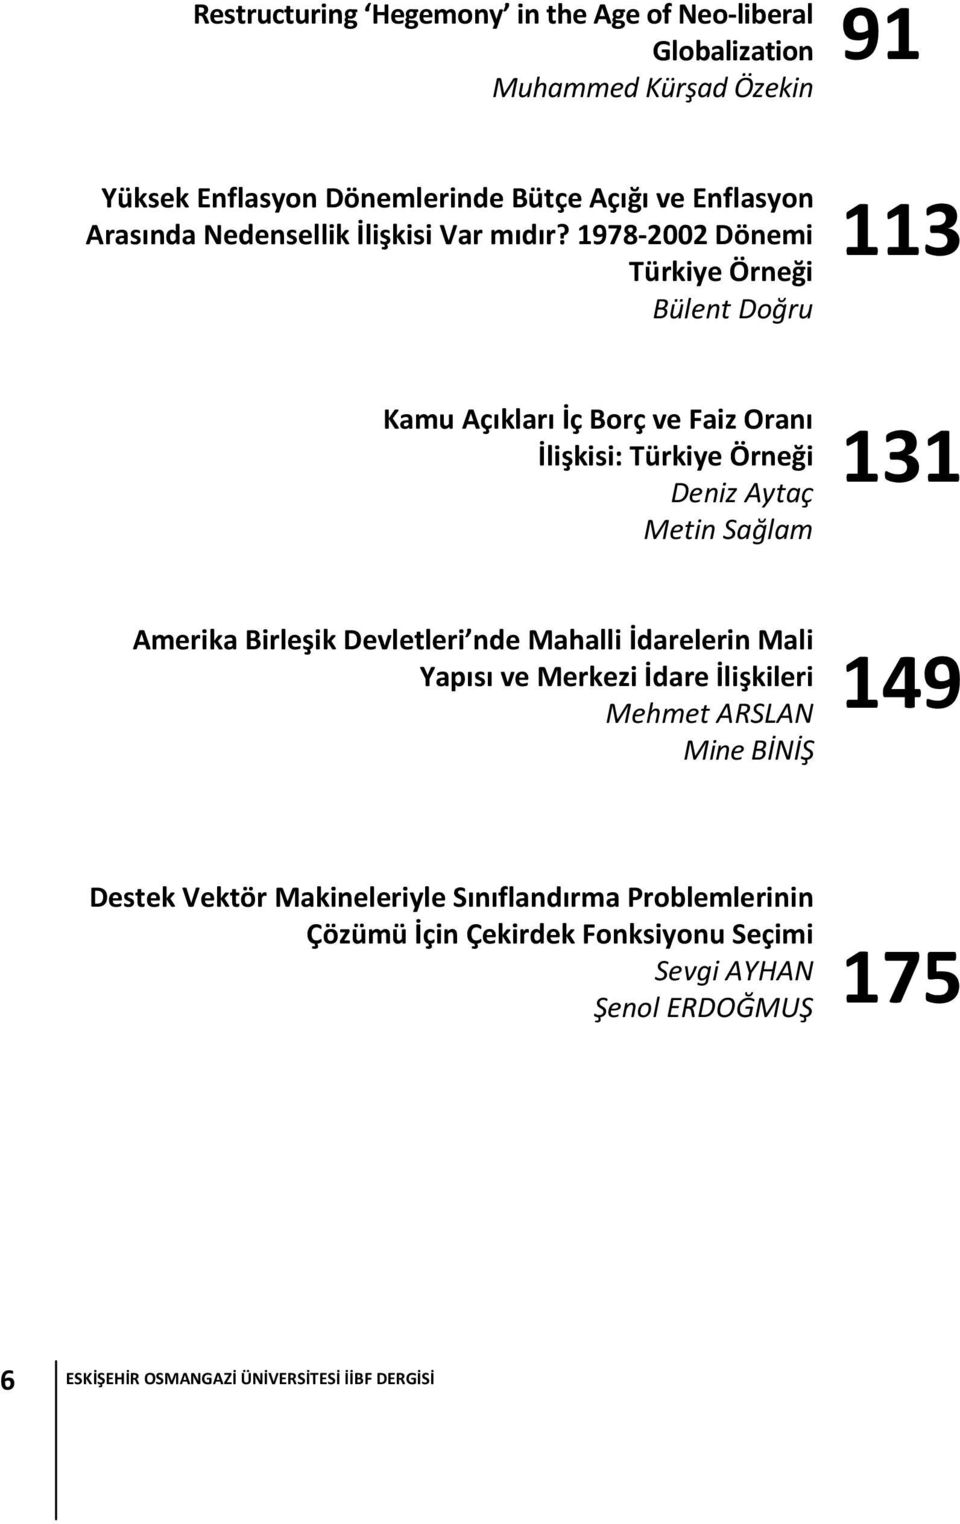 1978-2002 Dönemi Türkiye Örneği Bülent Doğru 113 Kamu Açıkları İç Borç ve Faiz Oranı İlişkisi: Türkiye Örneği Deniz Aytaç Metin Sağlam 131 Amerika